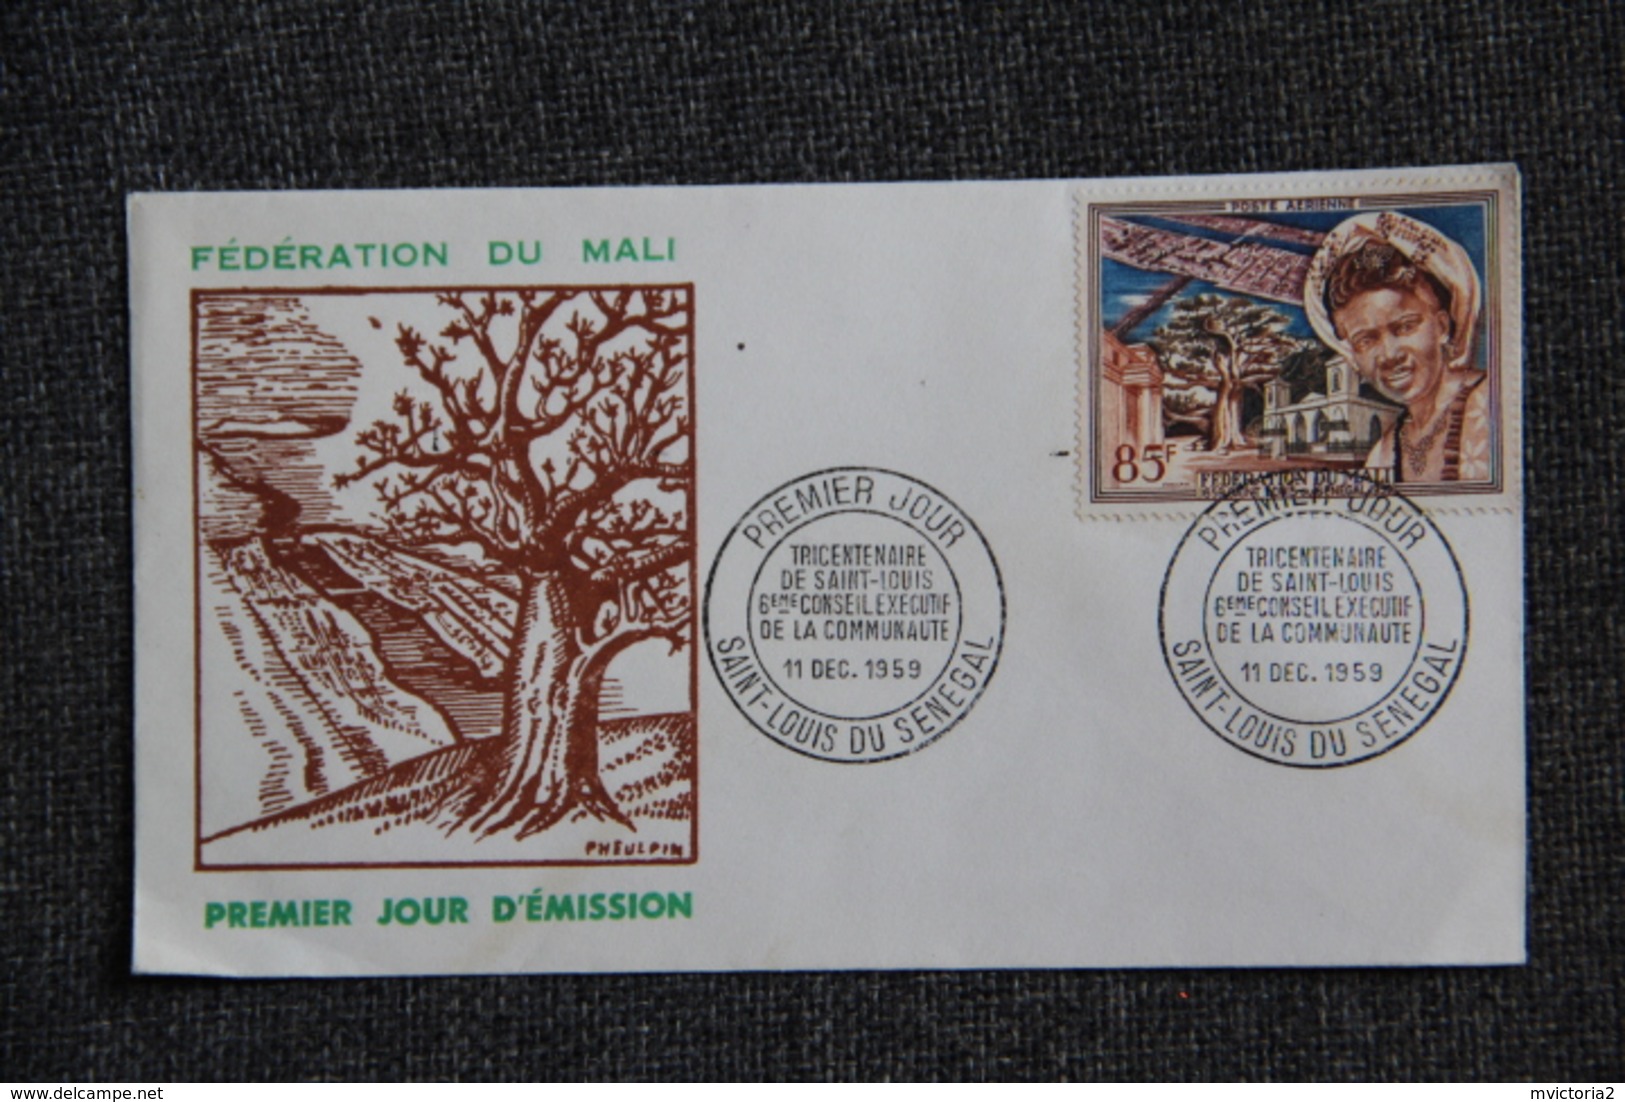 Fédération Du MALI - 1er Jour D'émission : Tricentenaire De Saint Louis Du SENEGAL , 11 Décembre 1959 - Mali (1959-...)